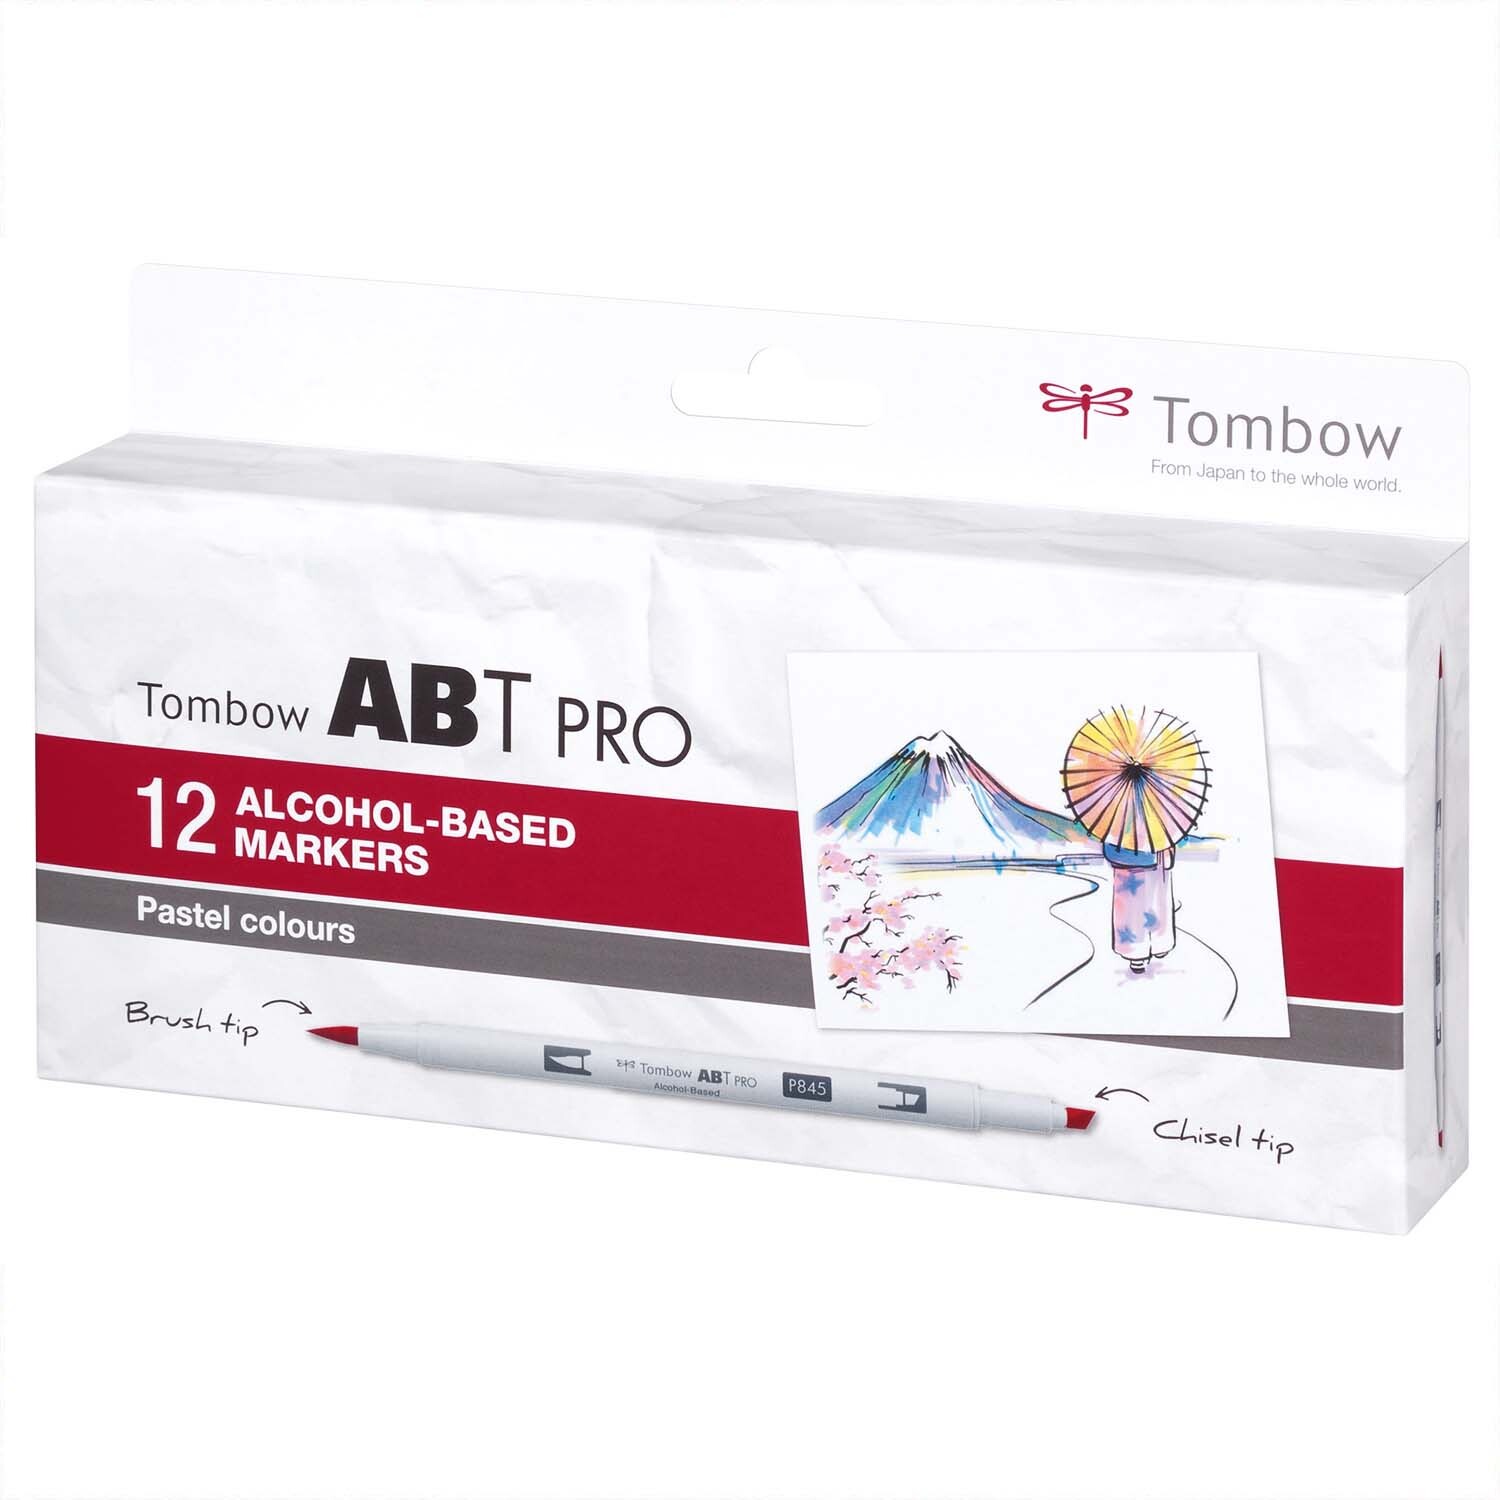 ABT PRO Pastell Colours Alkoholbasierte Marker 12teilig